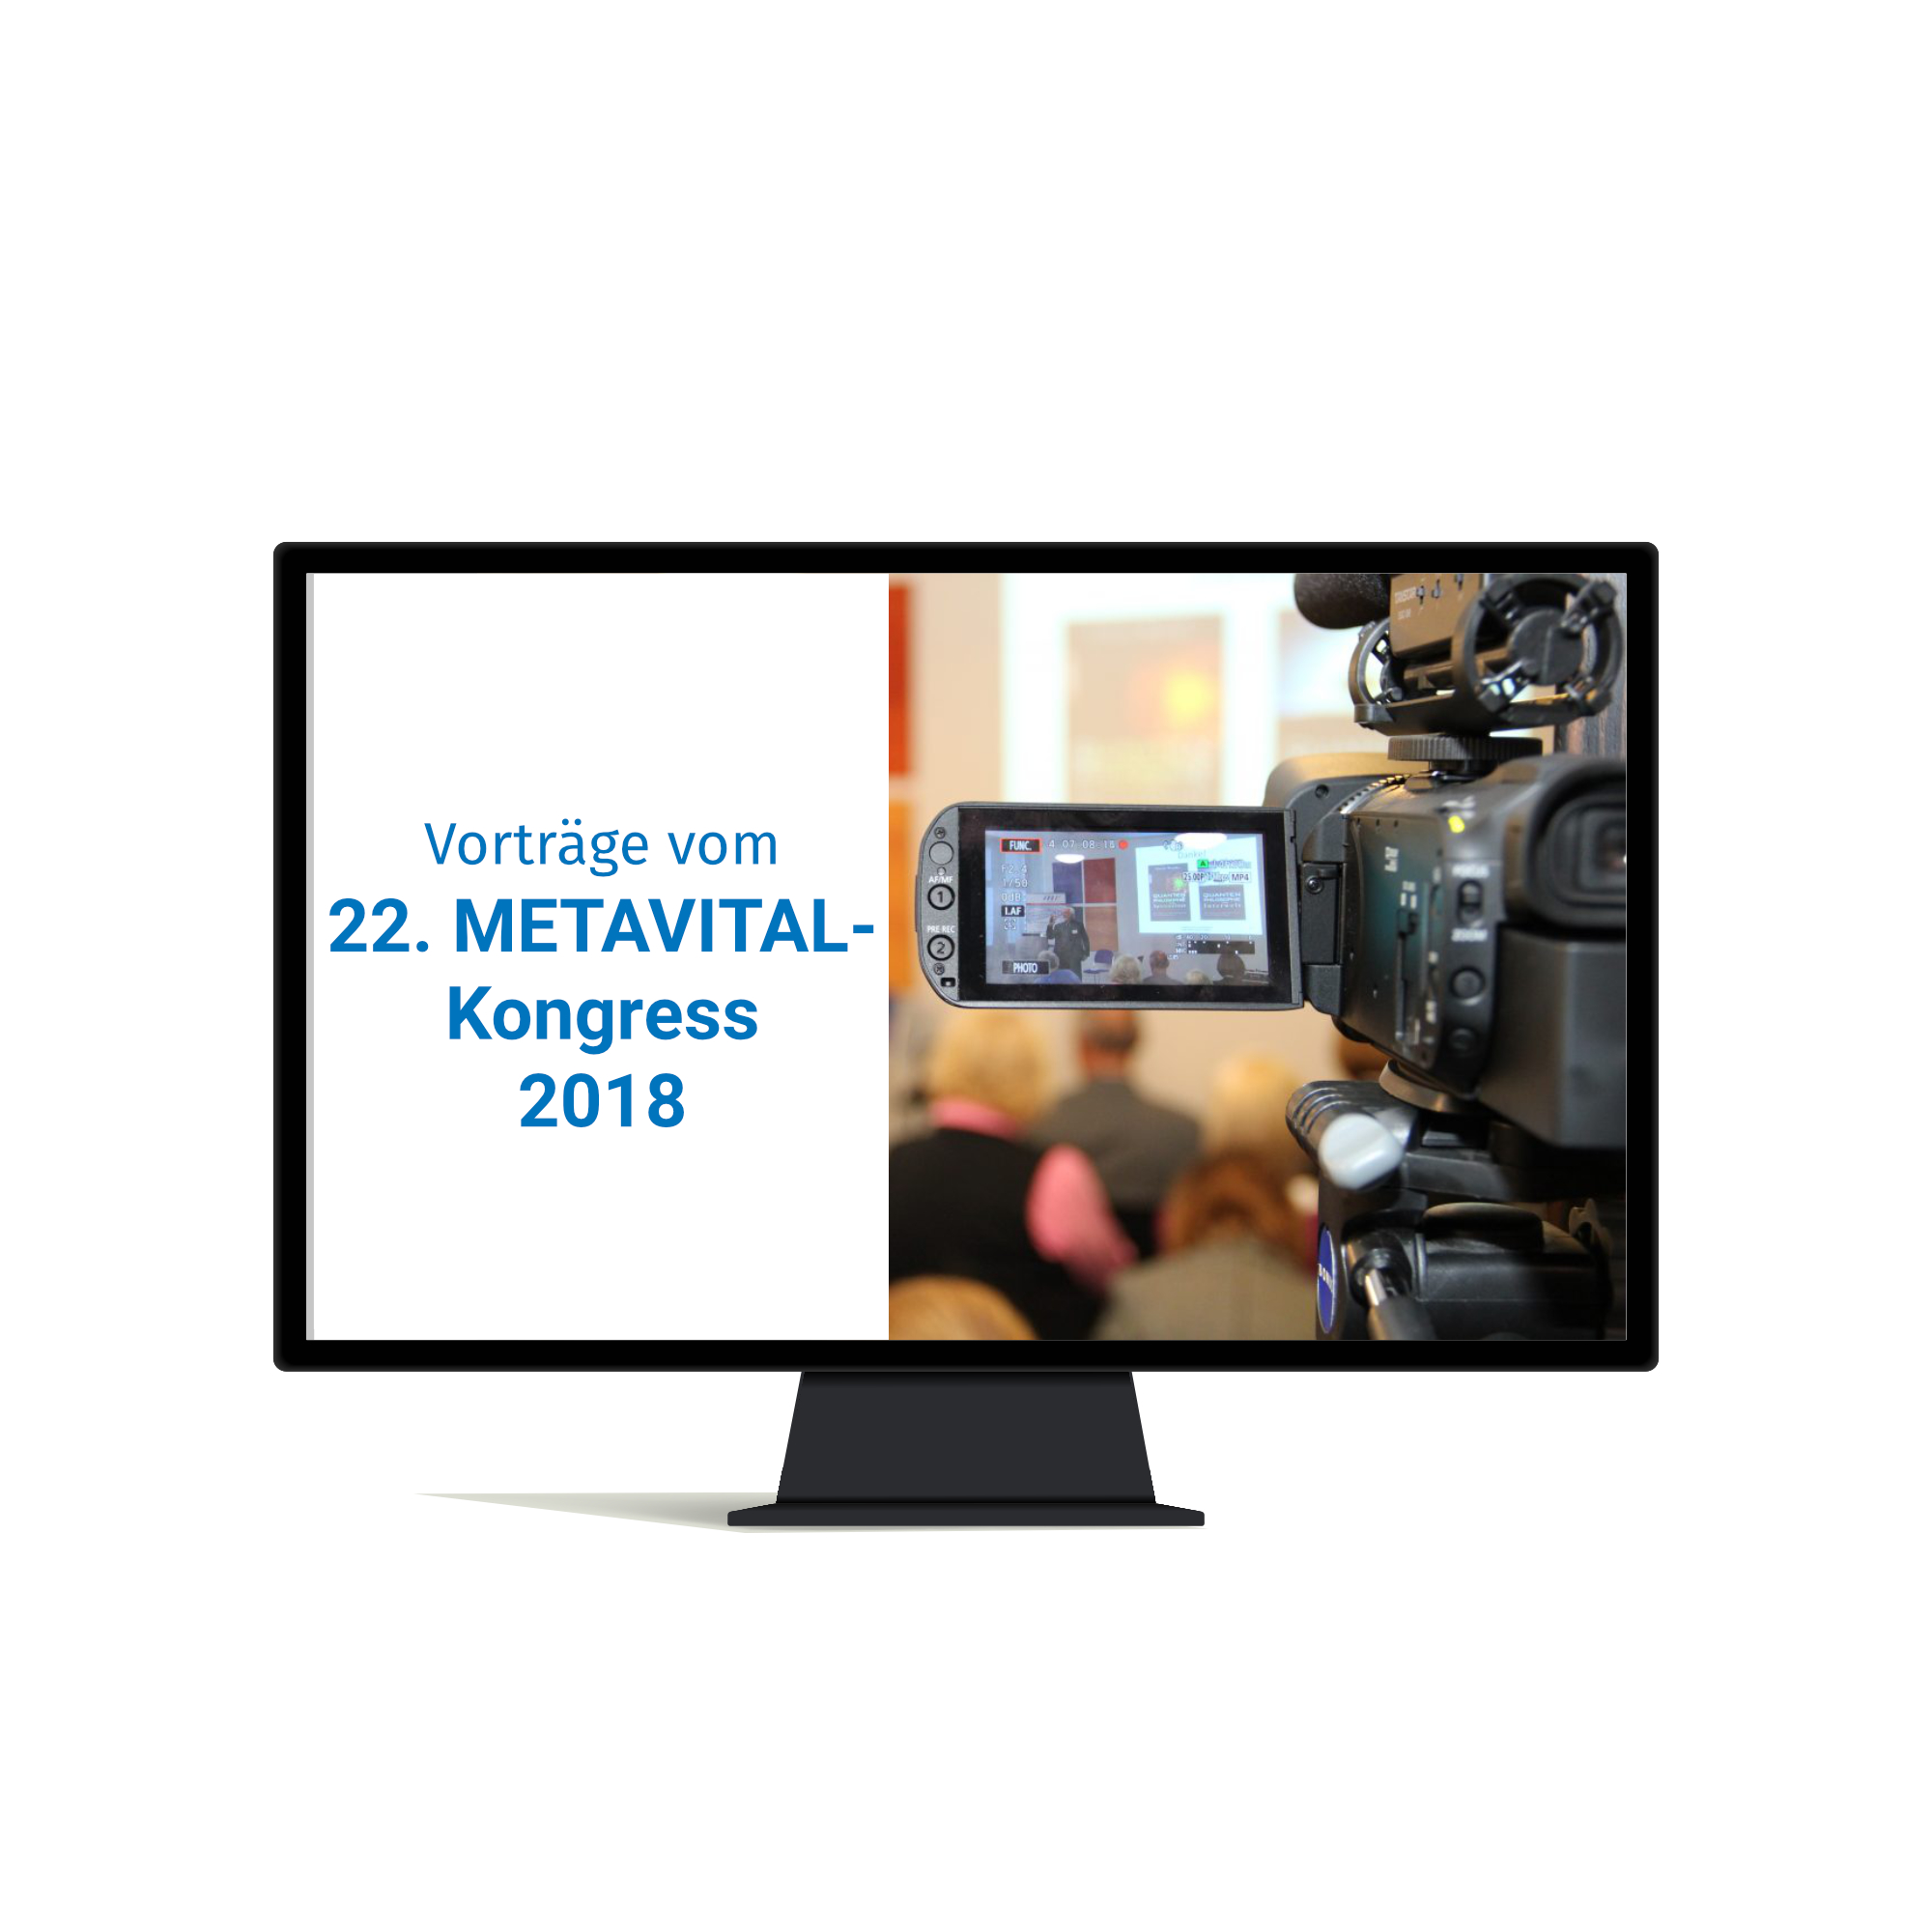 Vorträge vom 22. METAVITAL-Kongress 2018